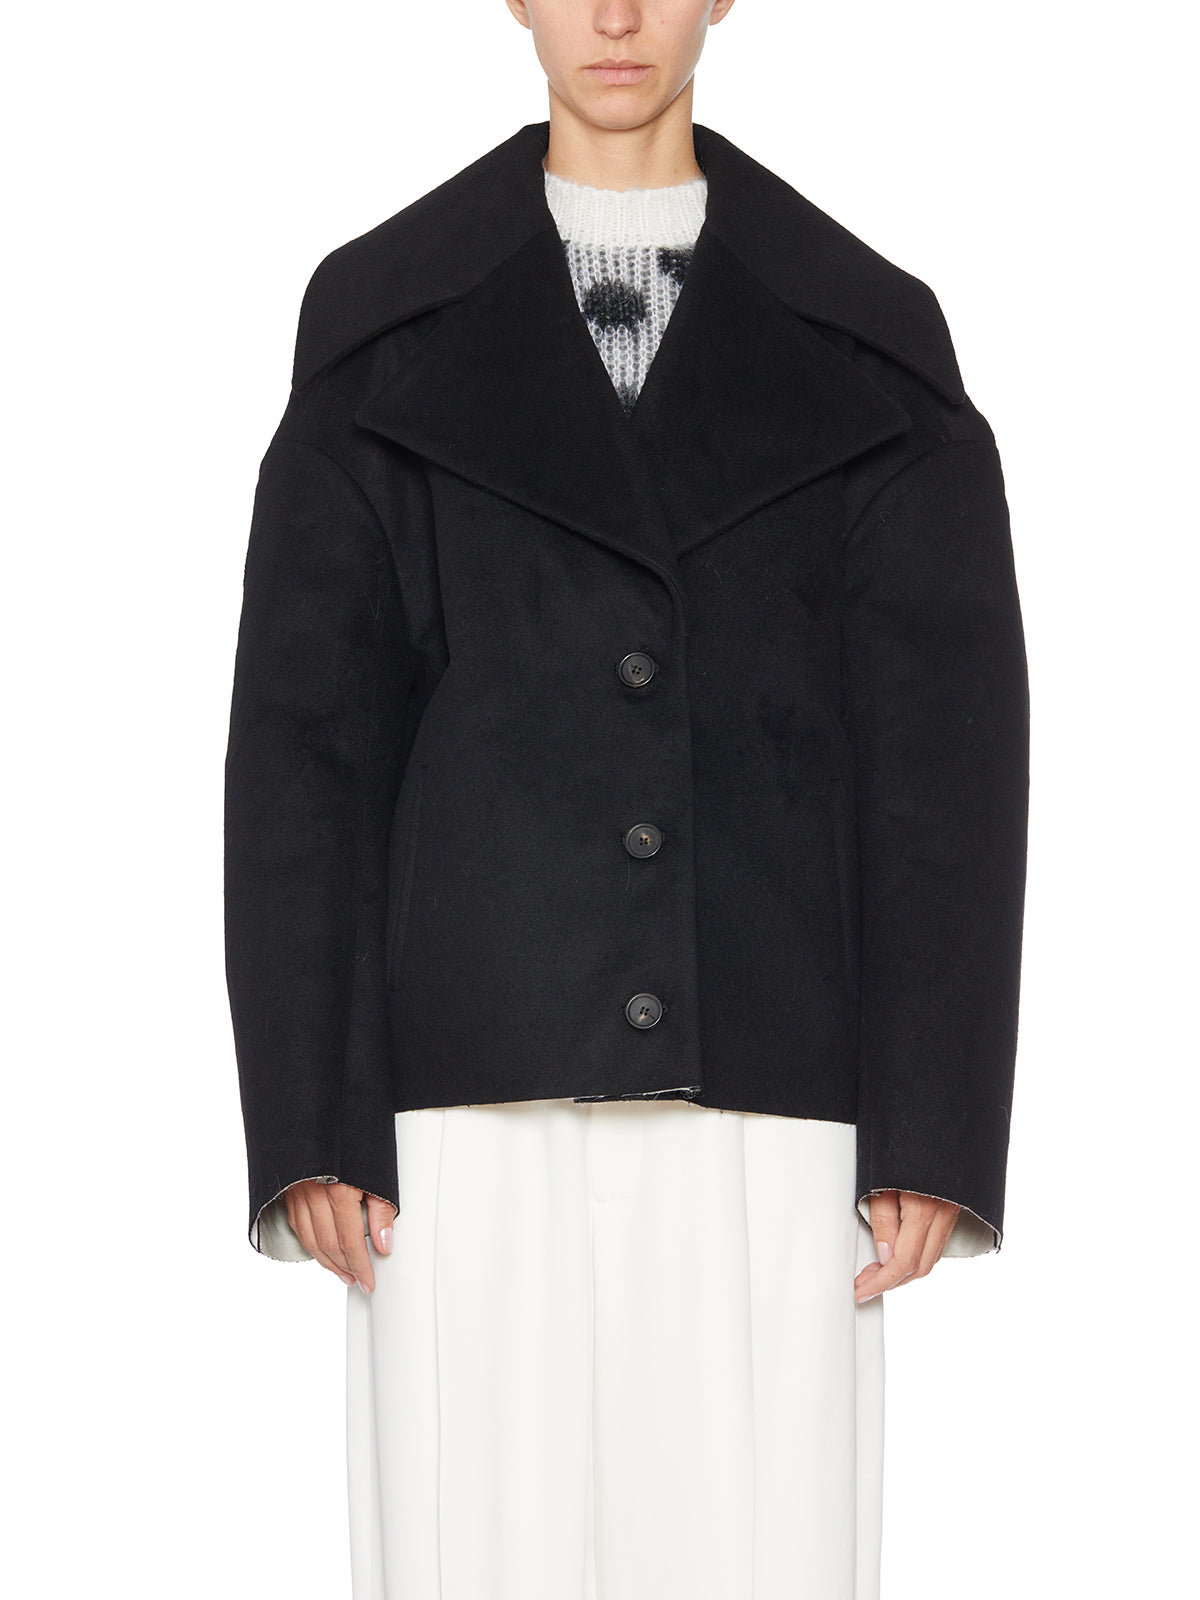 Áo khoác cánh tiên đen đẹp mắt cho nữ - bộ sưu tập FW23